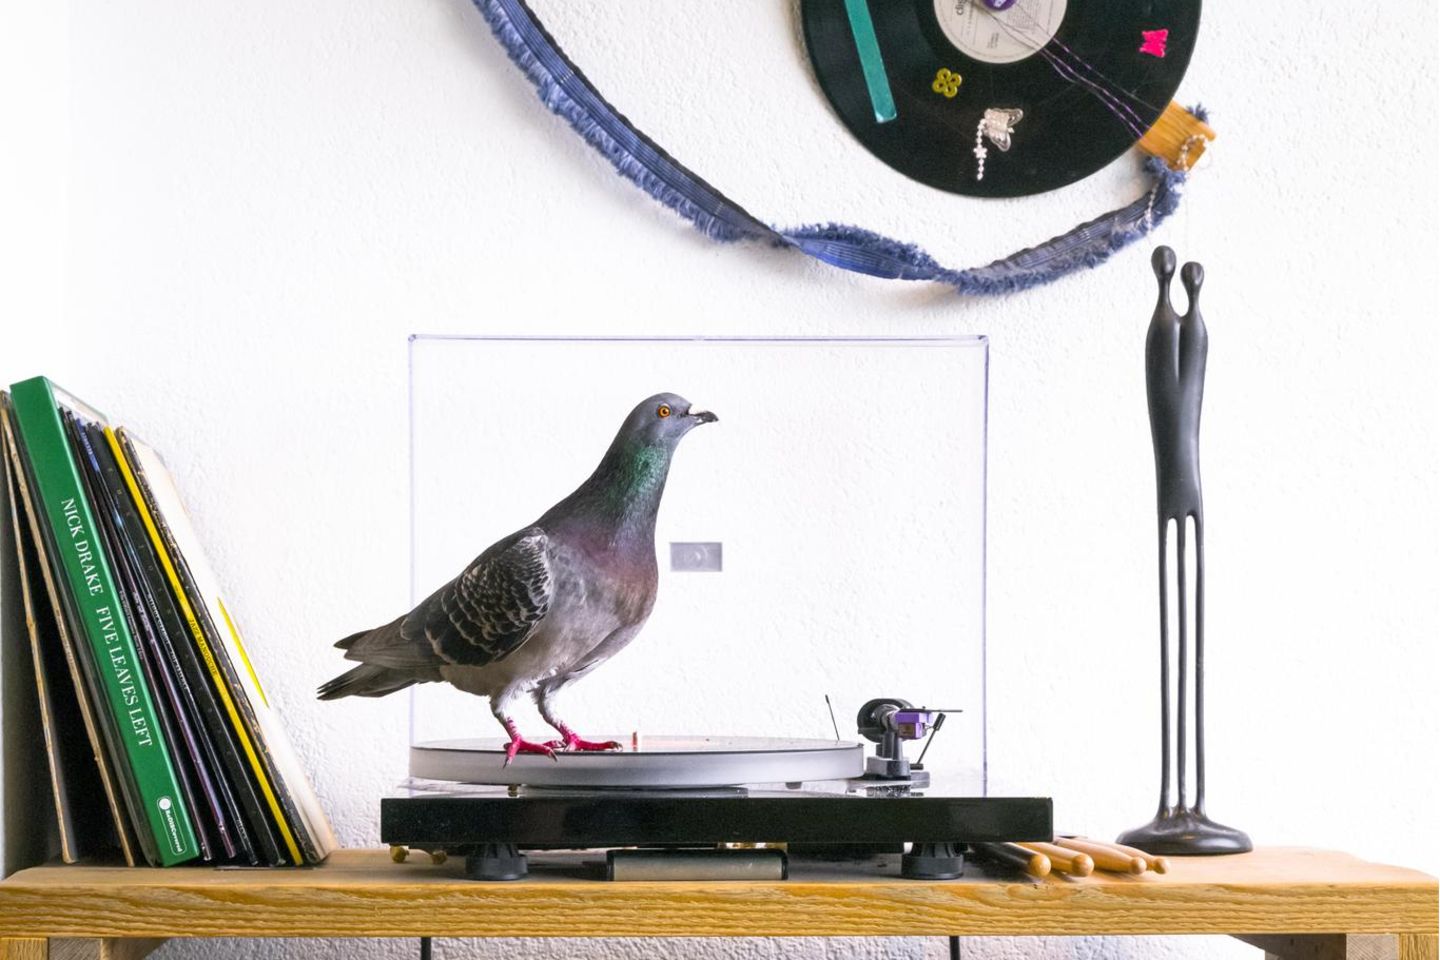 Ollie steht auf Musik: Als die Scheu vor den Menschen überwunden ist, erweist sich die Wohnung als Abenteuerspielplatz für die Tauben